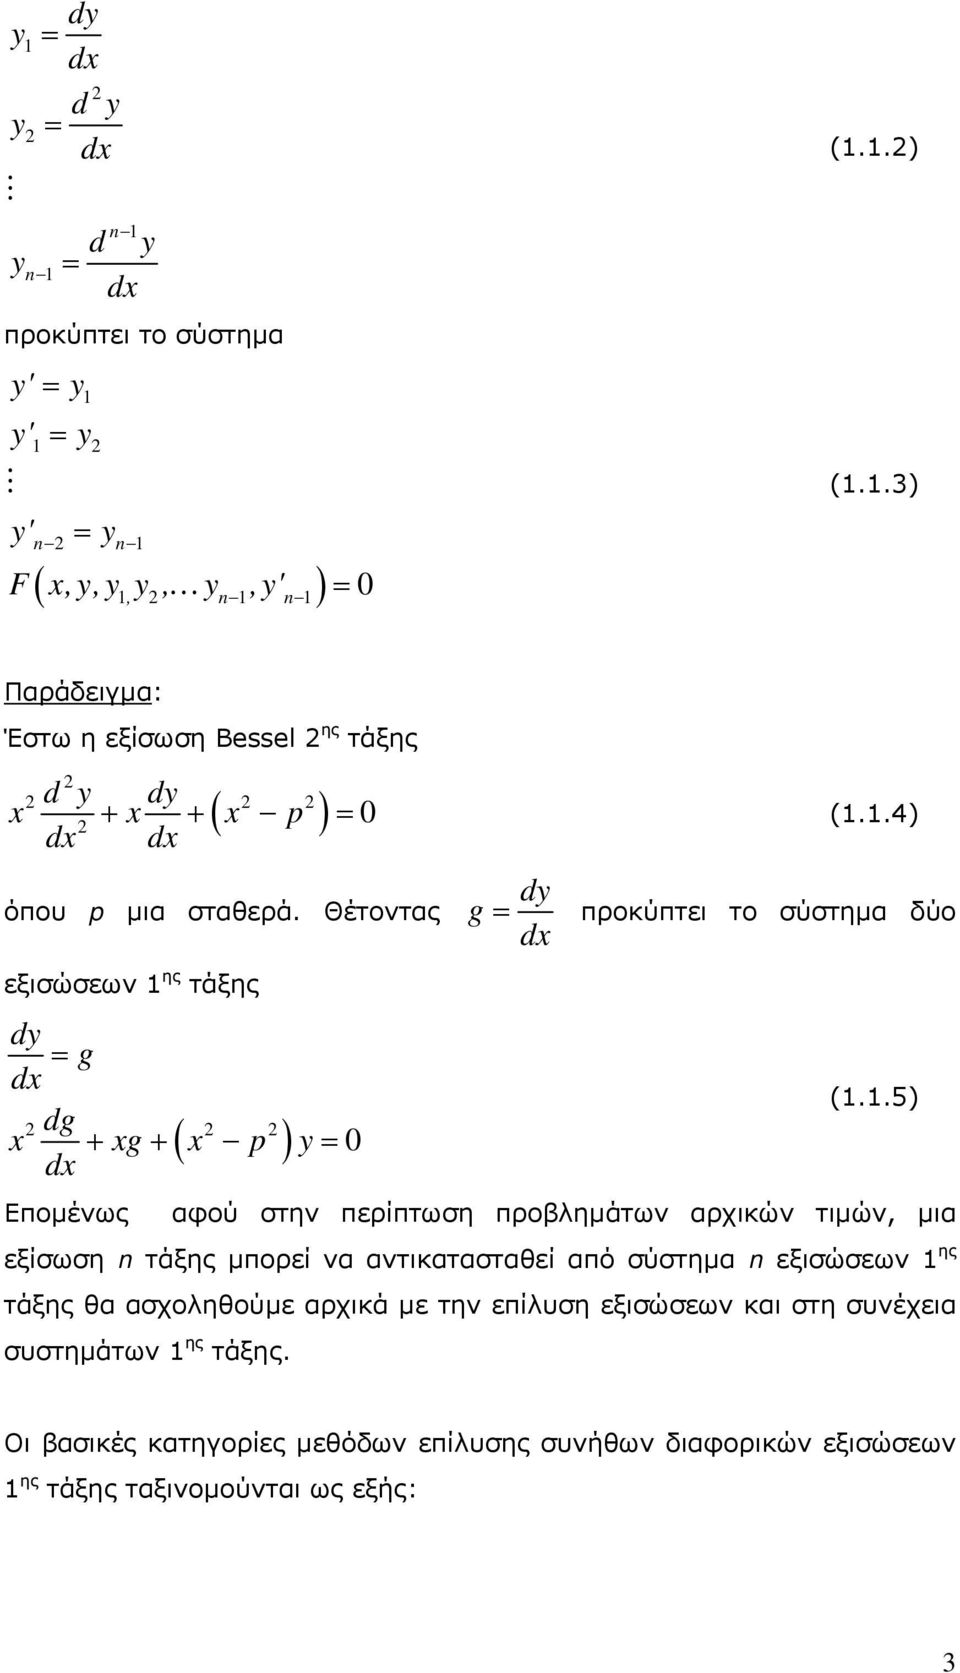 Θέτοντας εξισώσεων ης τάξης dy g d dg d 0 g p y g dy d προκύπτει το σύστημα δύο (.